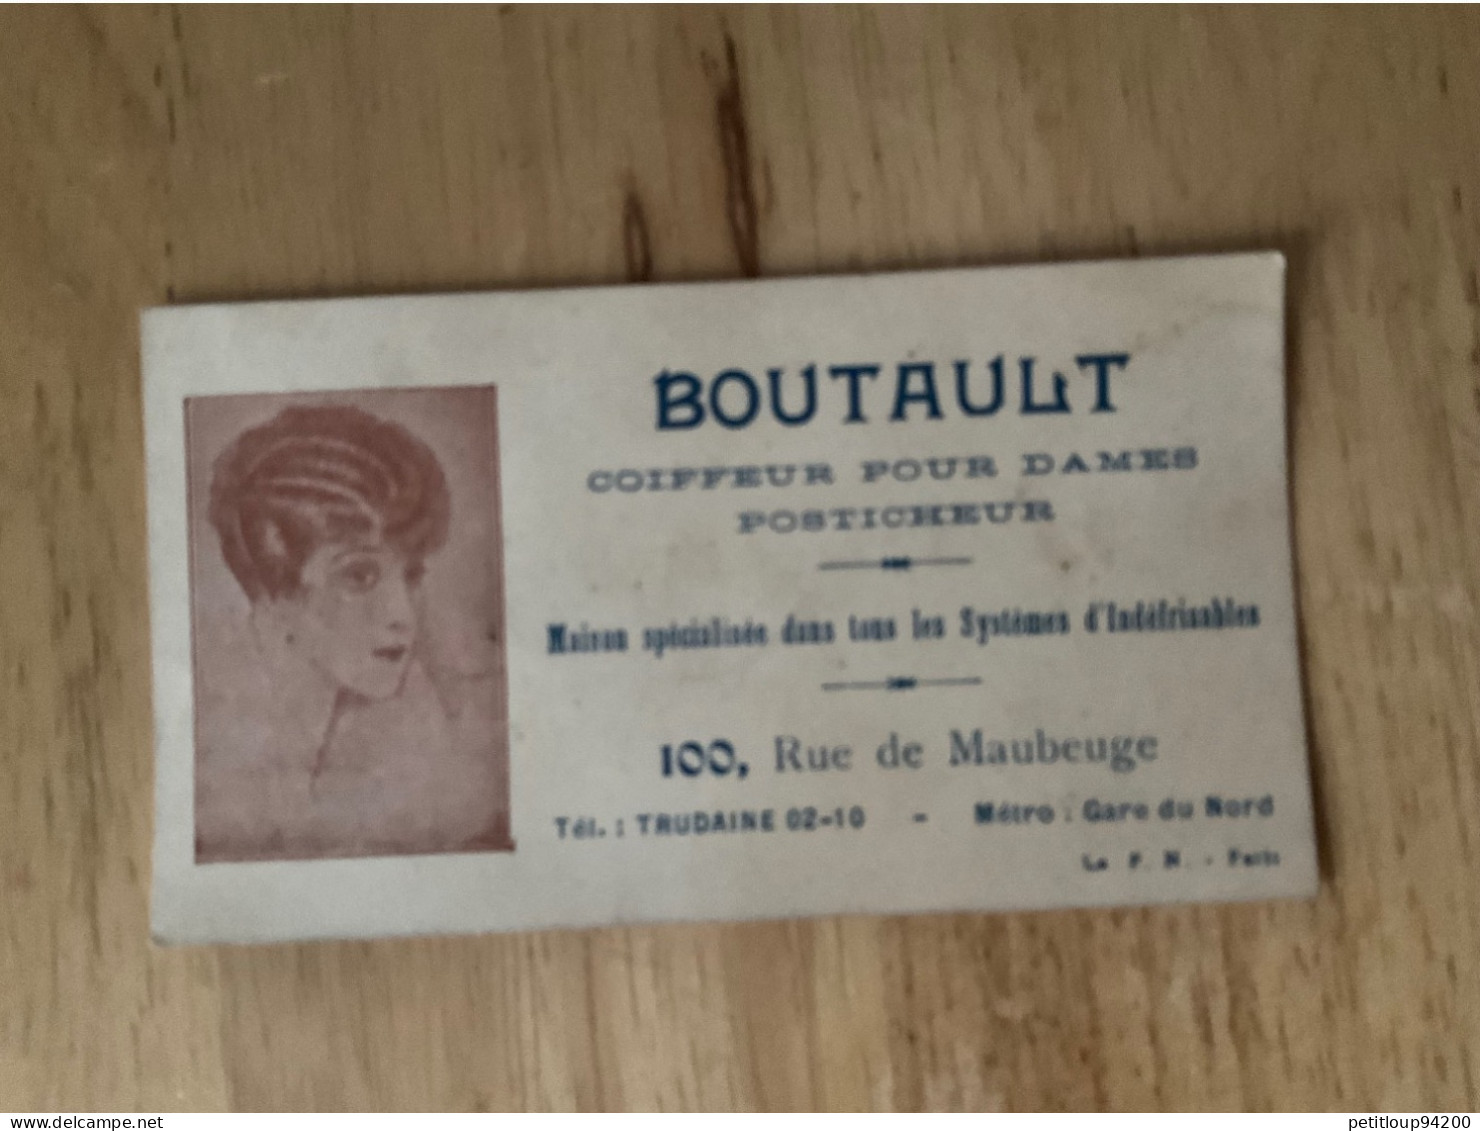 CARTE DE VISITE Coiffeur Pour Dames  Posticheur  BOUTAULT  Paris - Cartoncini Da Visita